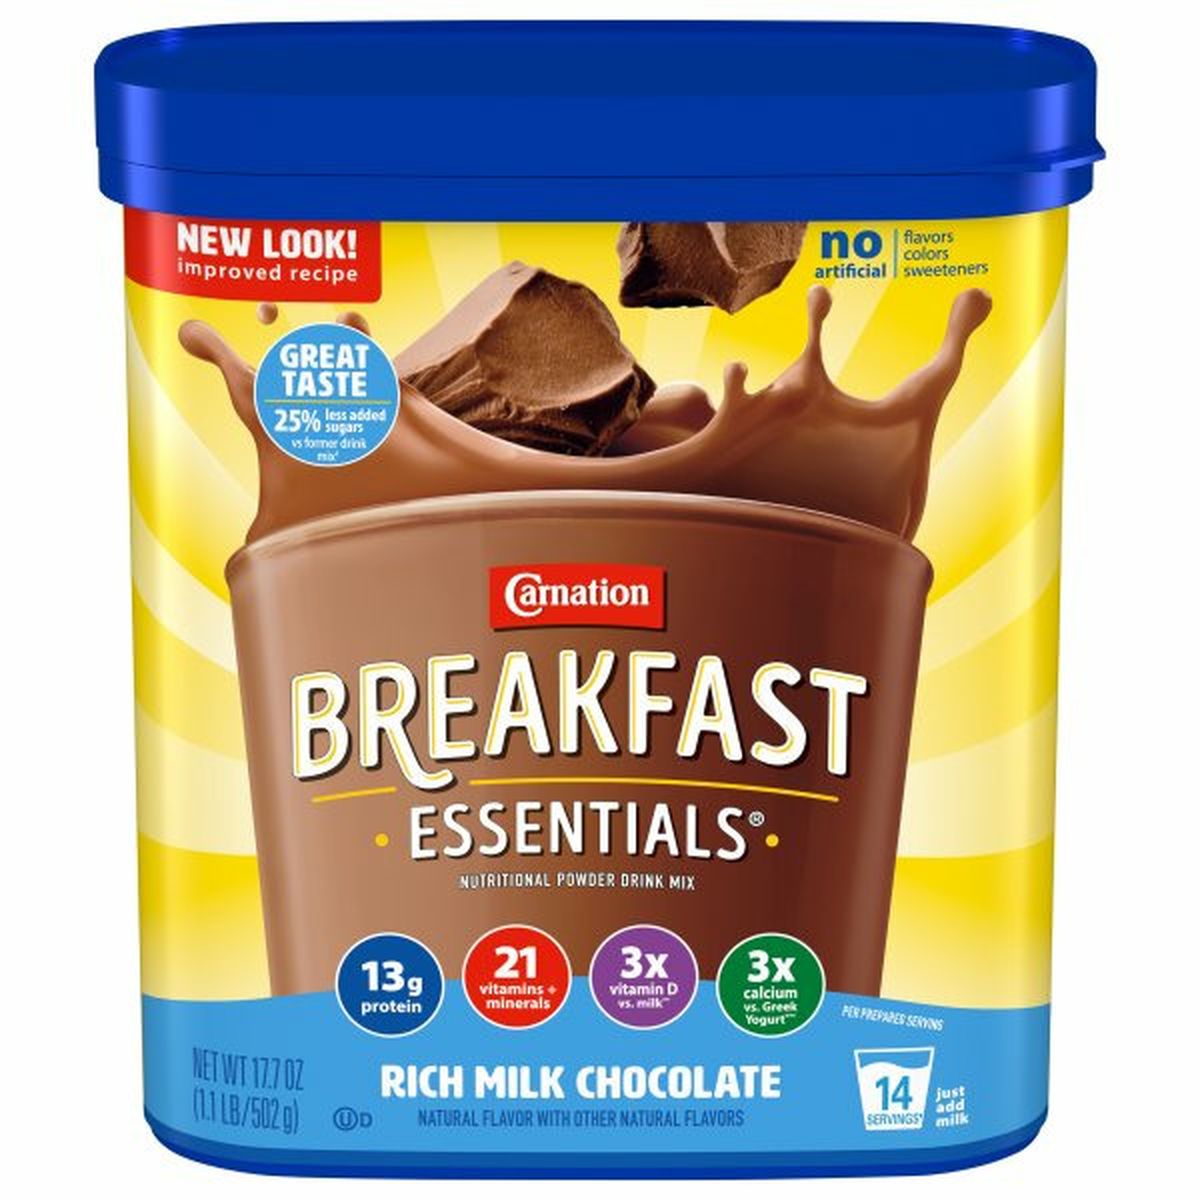 Calories in Carnation Breakfast Essentials Breakfast Essentials Nutritional Powder Drink Mix, Rich Milk Chocolate